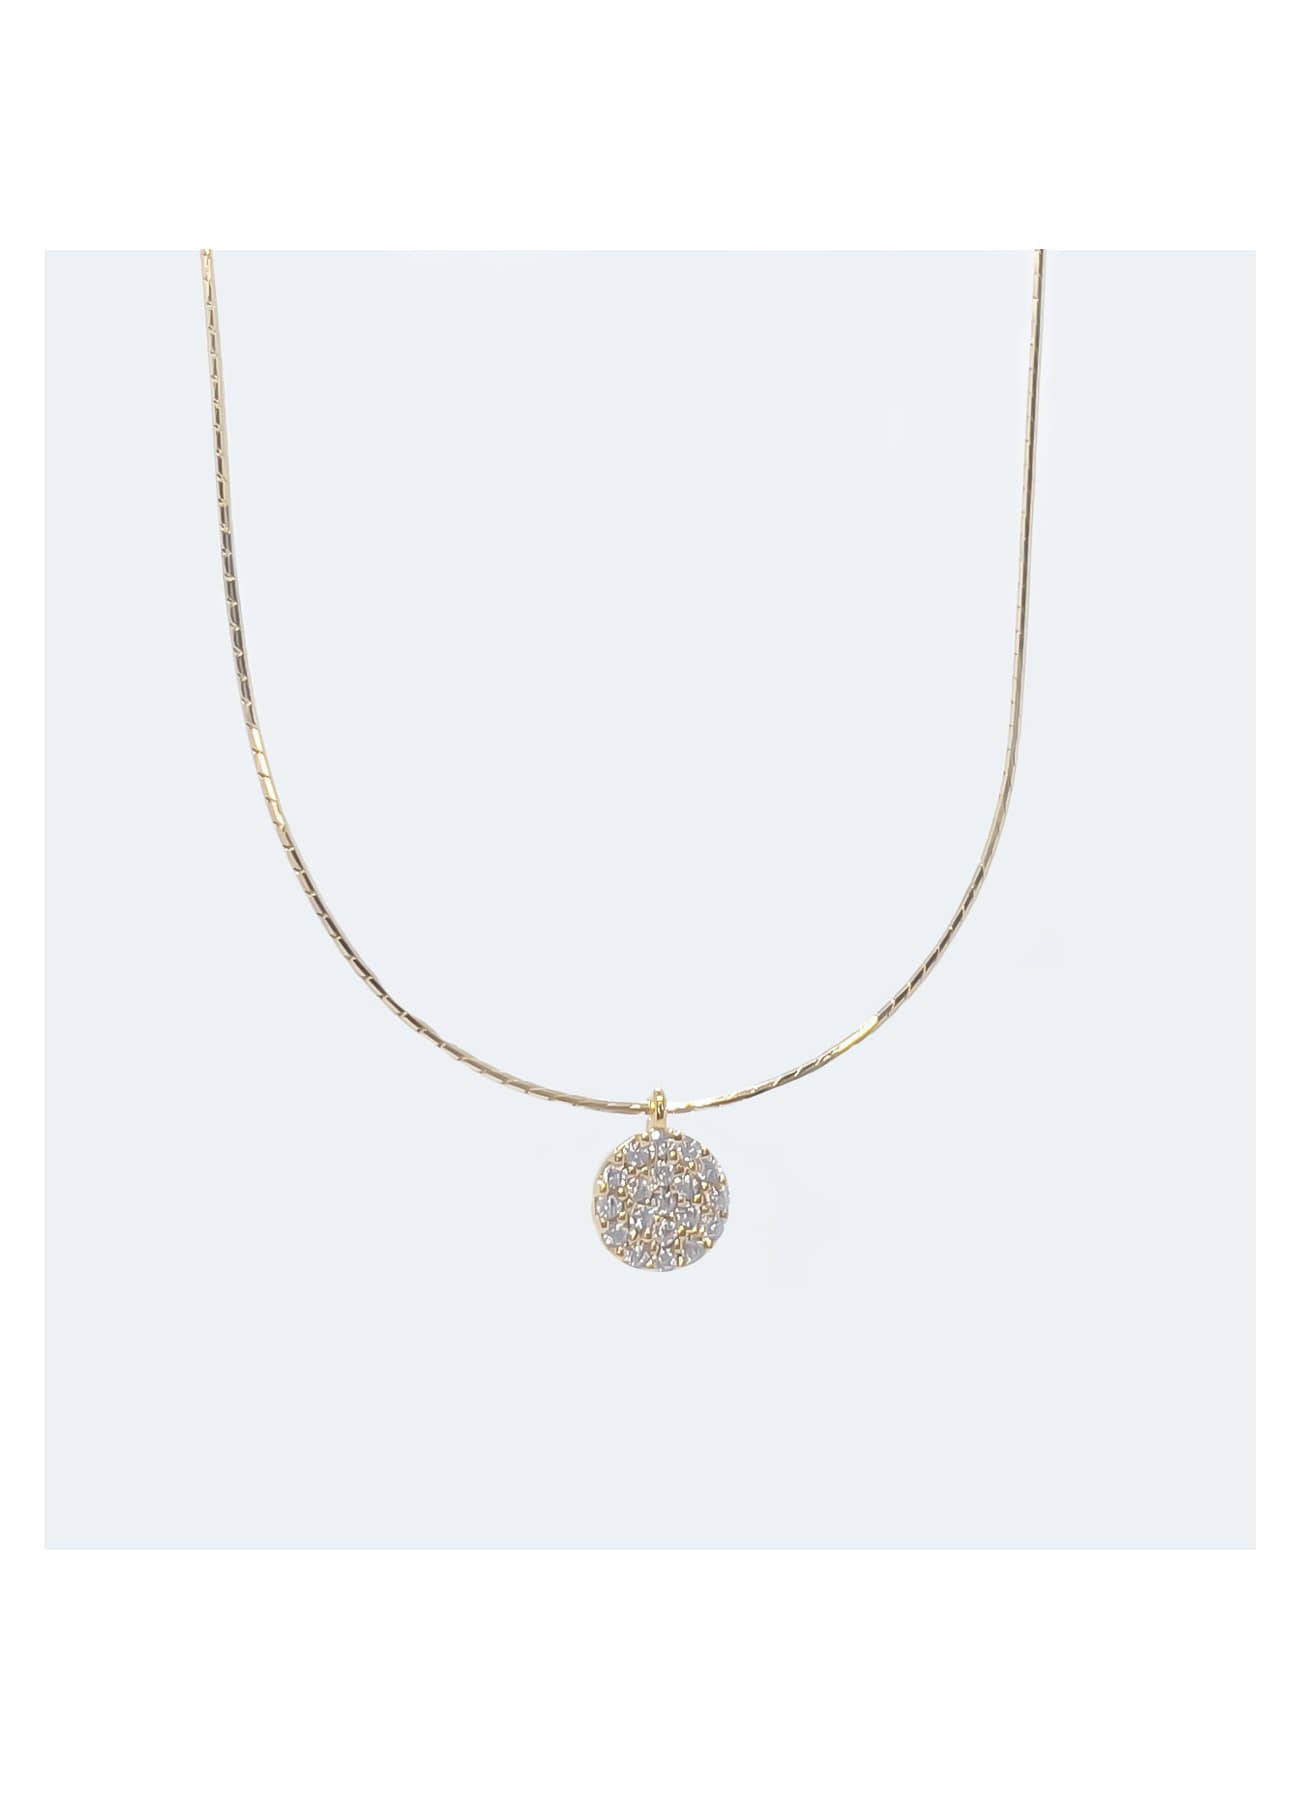 06n -zircon round necklace 지르콘 라운드 네클리스